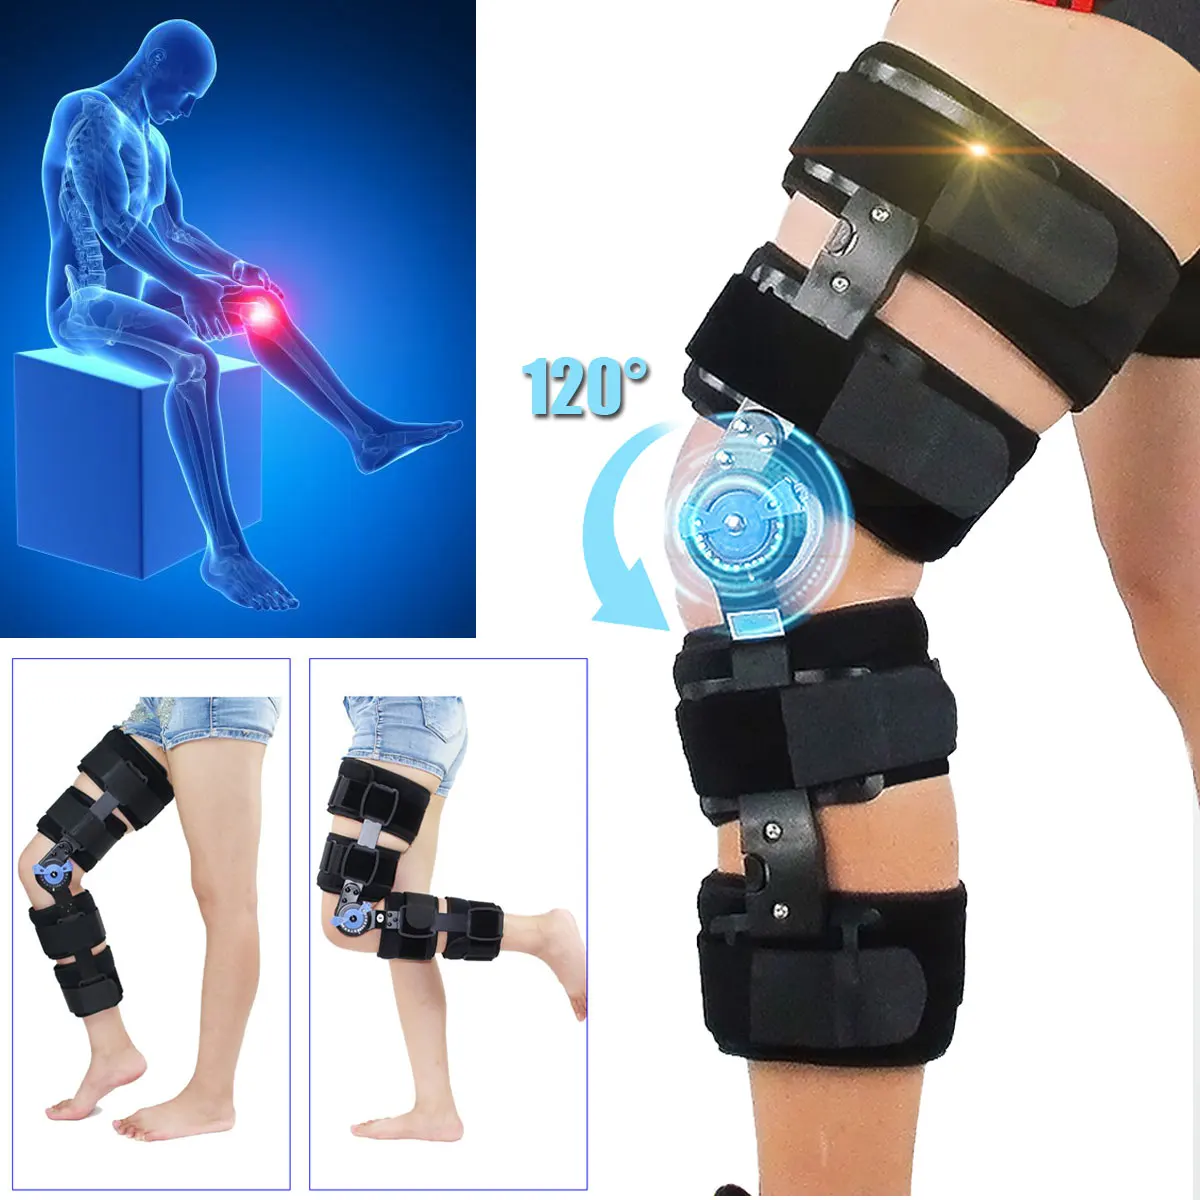 

Orthopedic Sport Knee Brace Adjustable 0-120 Degree Hinged Leg Band Knee Braces Protector Powerleg Bone Orthosis Ligament Care